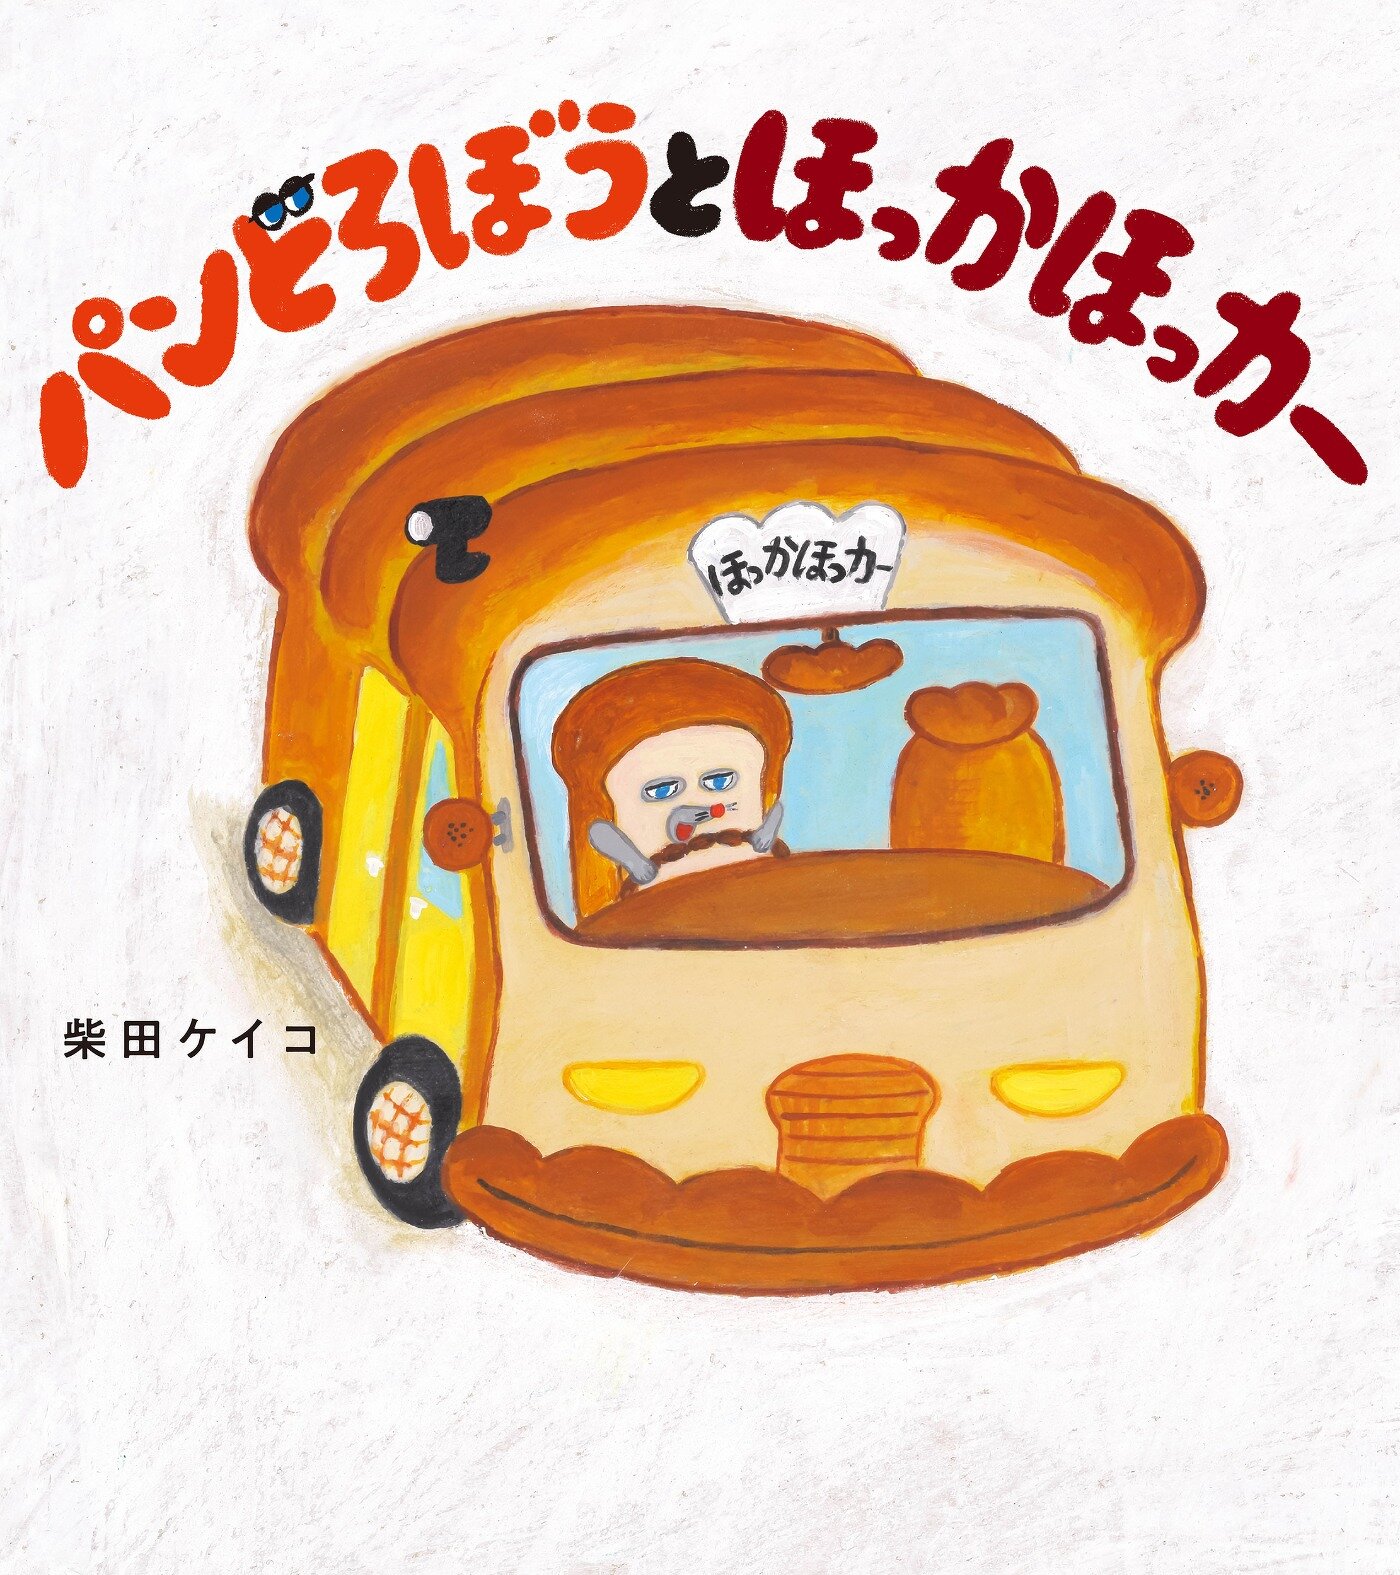 「パンどろぼう」シリーズの最新作『パンどろぼうとほっかほっカー』が9月13日に発売決定！